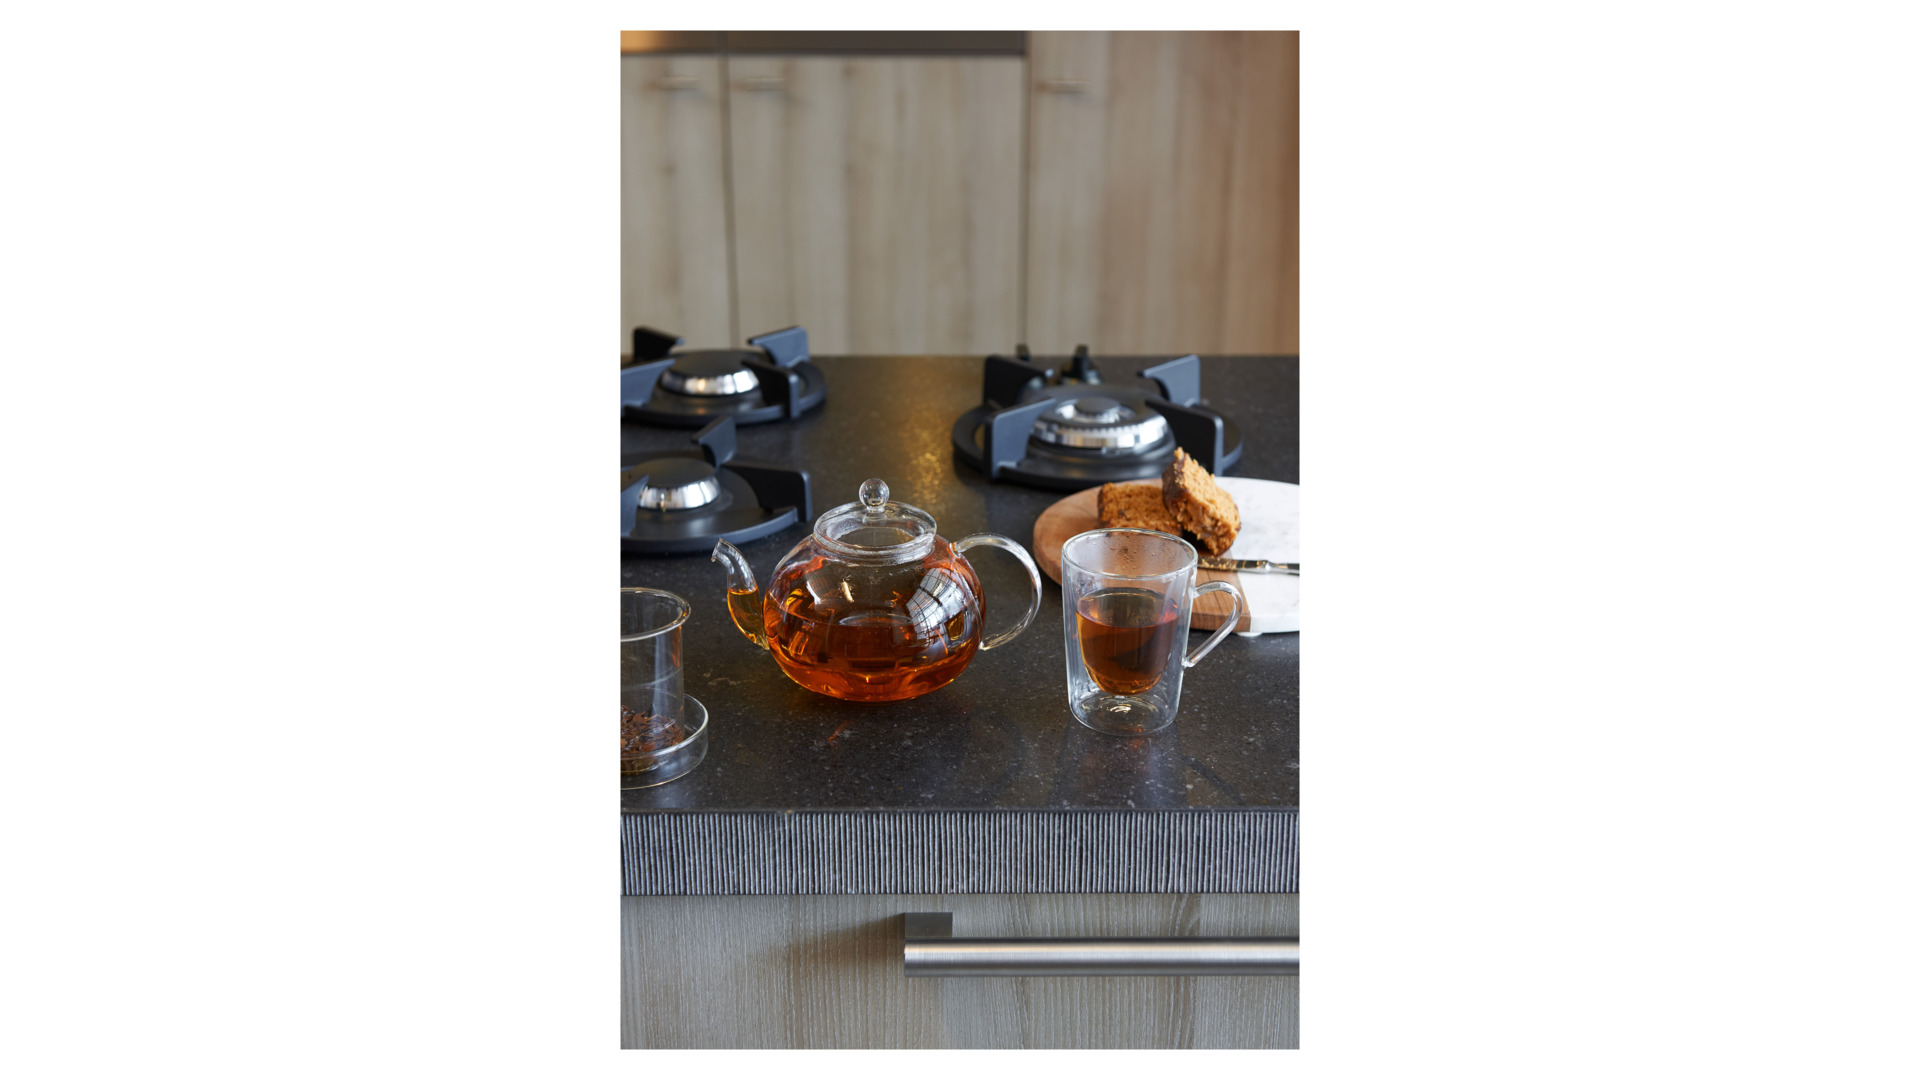 Чайник заварочный Bredemeijer Verona со стеклянным фильтром для связанного чая 1 л, стекло